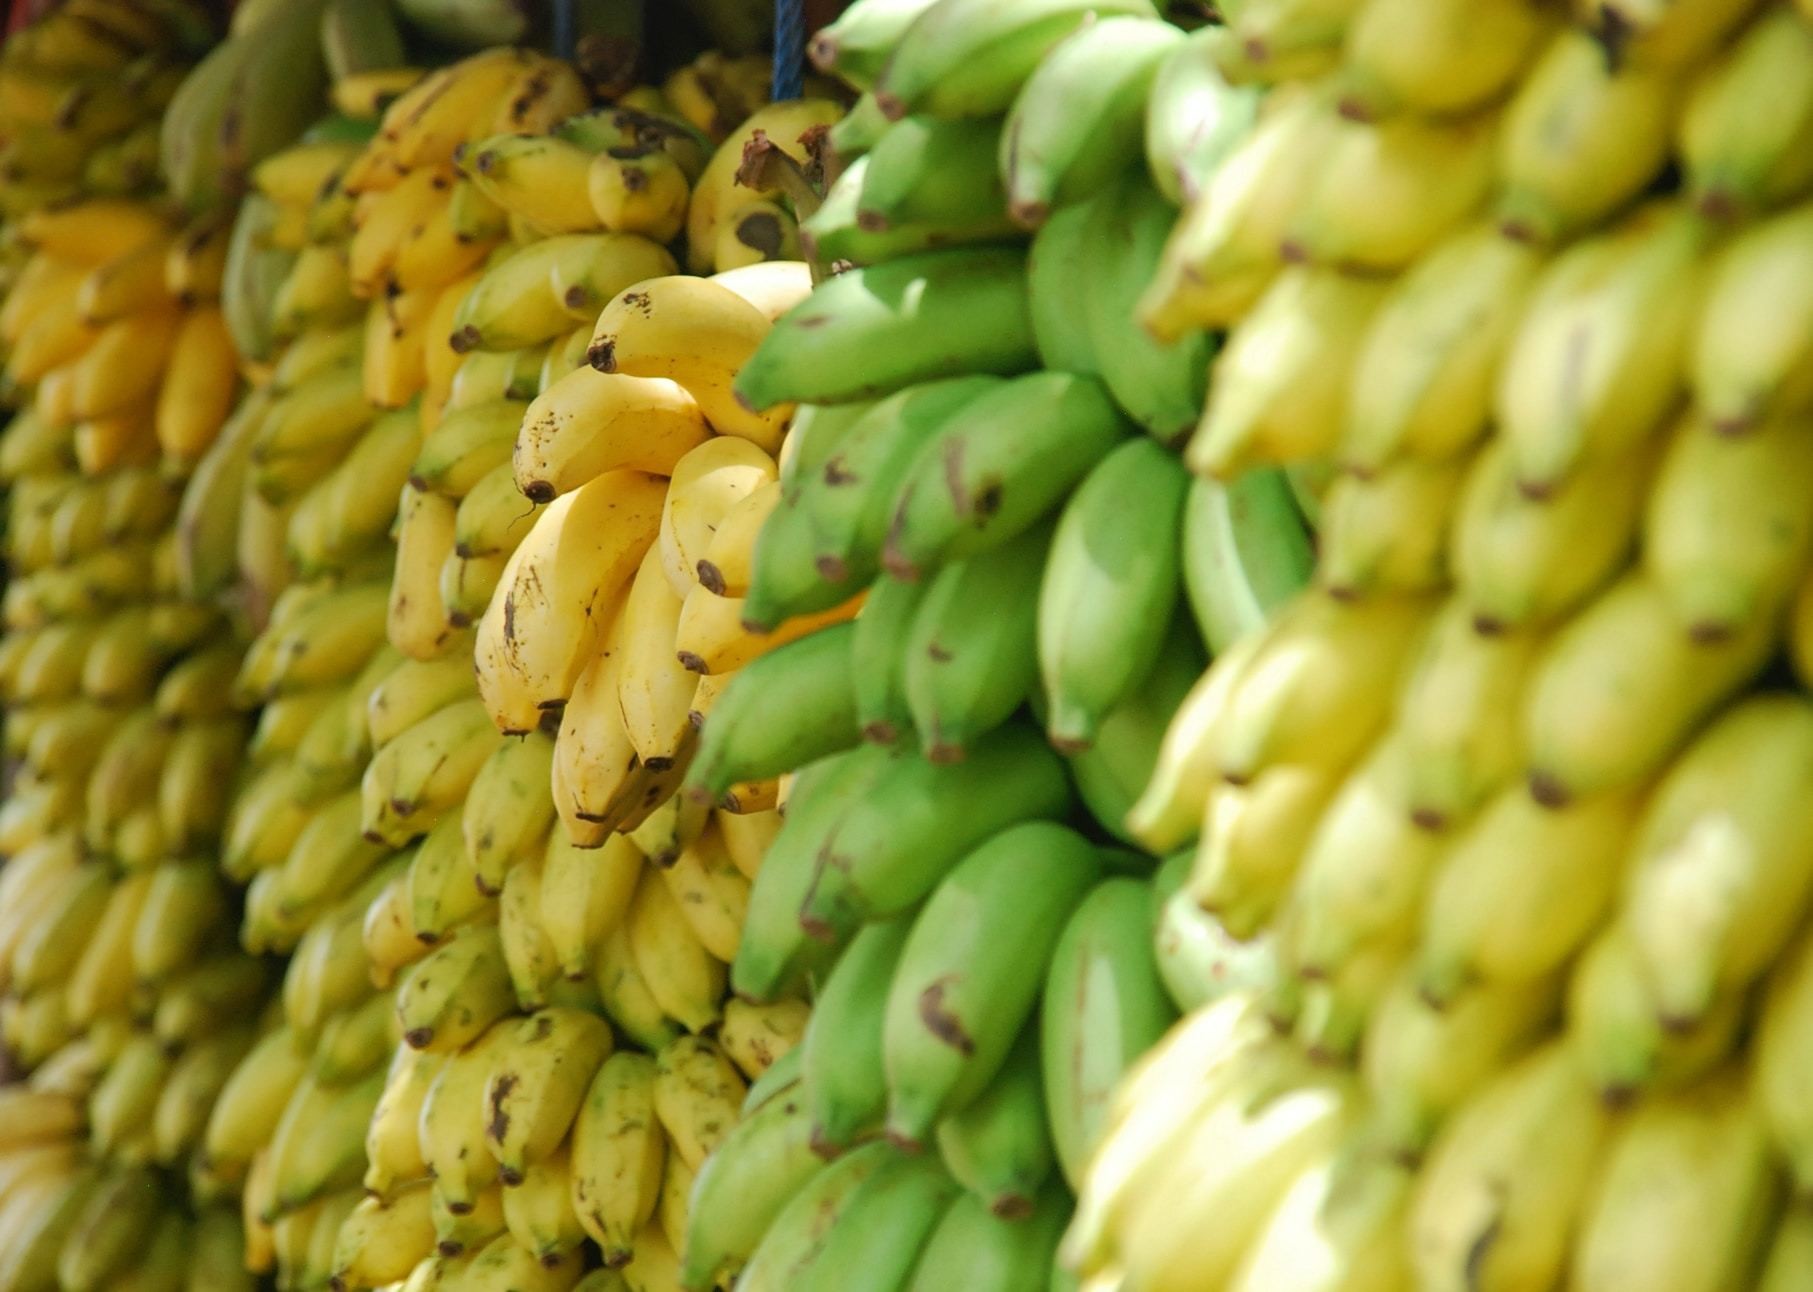 这张图片展示了成堆的香蕉，说明了香蕉垃圾升级利用的潜力